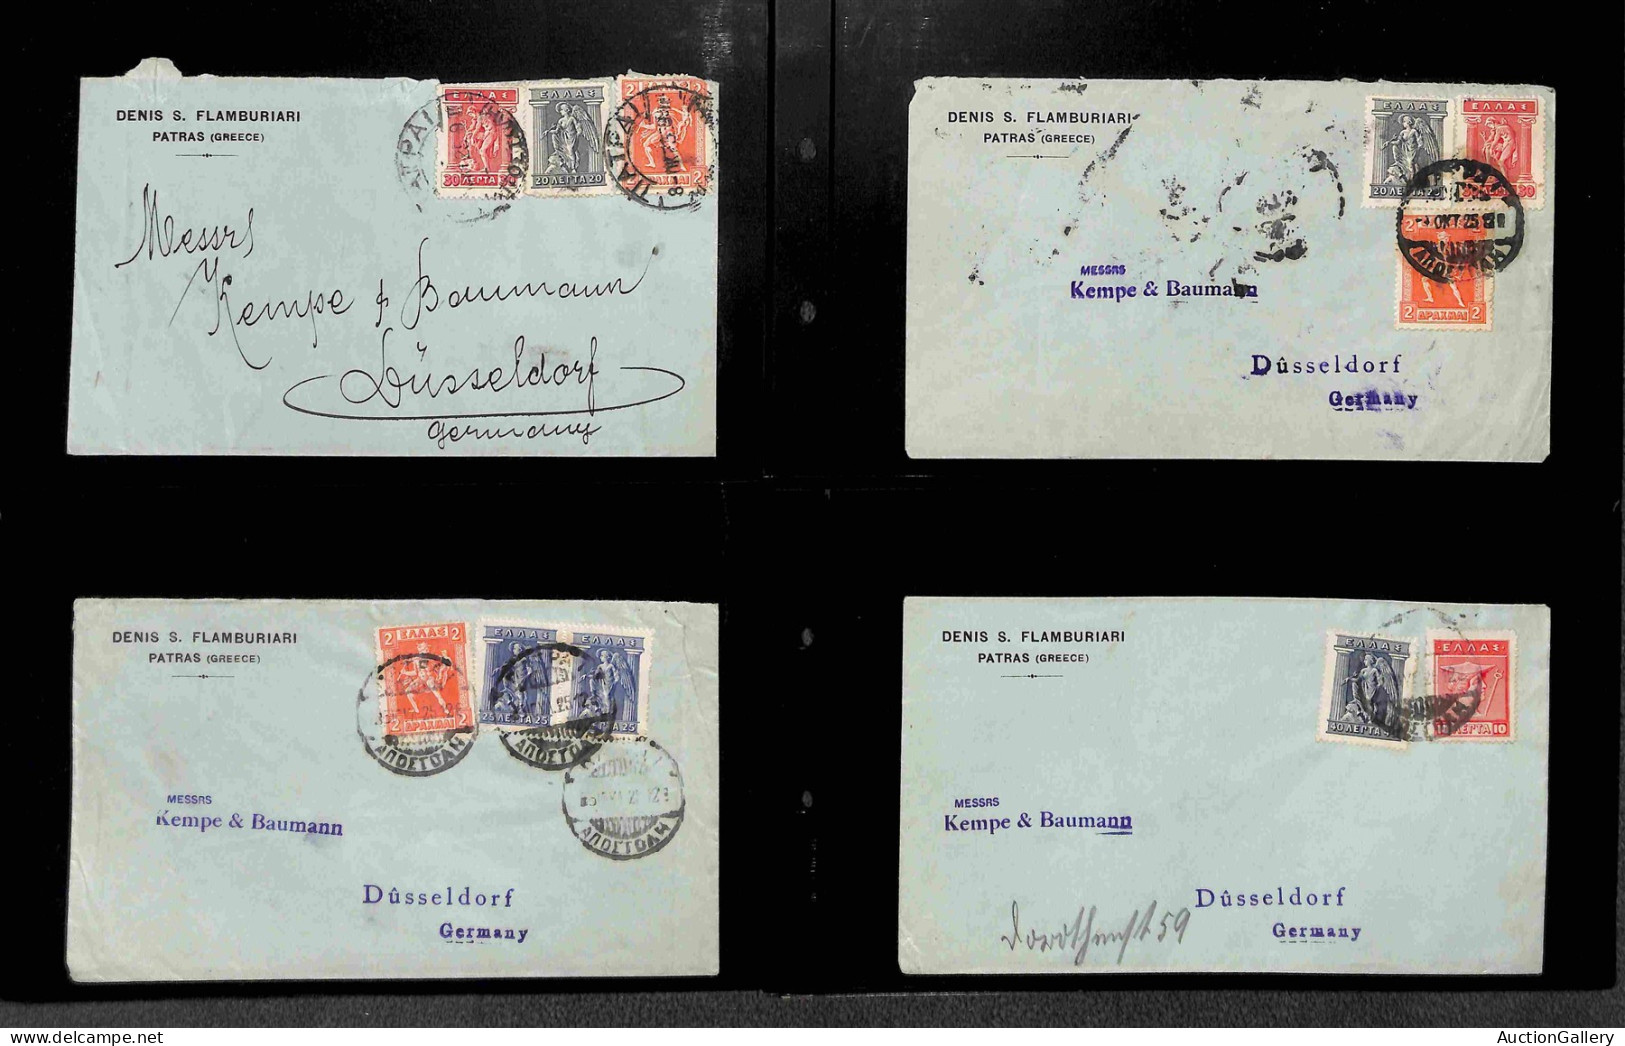 Lotti&Collezioni - Europa&Oltremare - GRECIA - 1925/1949 - Lotto di 52 buste con alcuni aerogrammi del periodo montati s